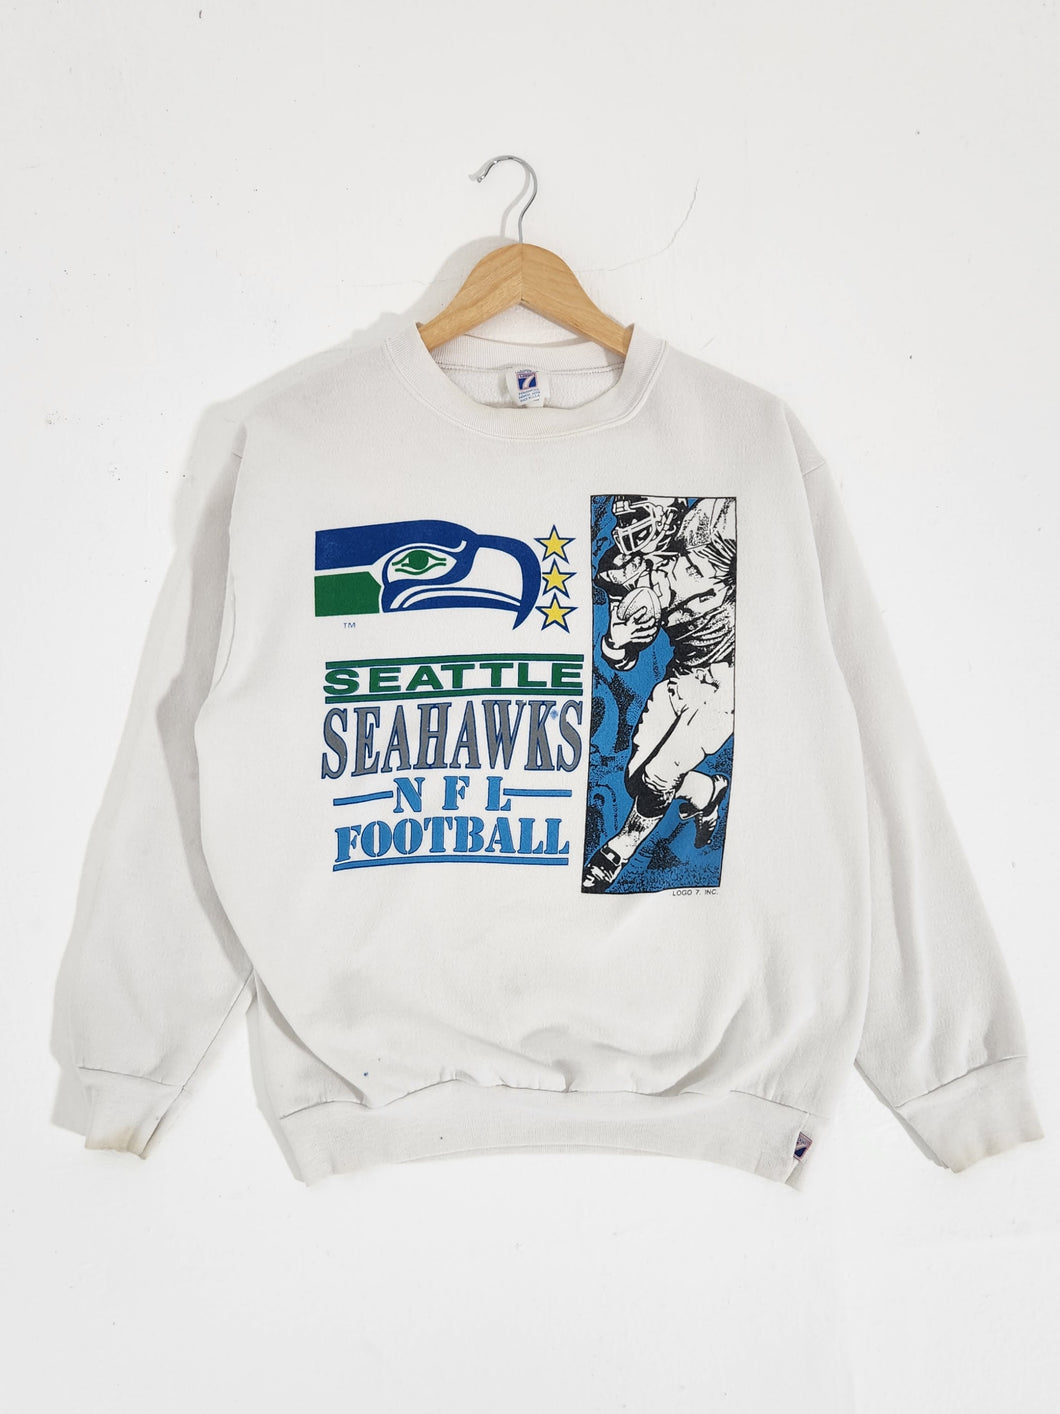 Vintage 1990's Seattle Seahawks Crewneck Sz. XL